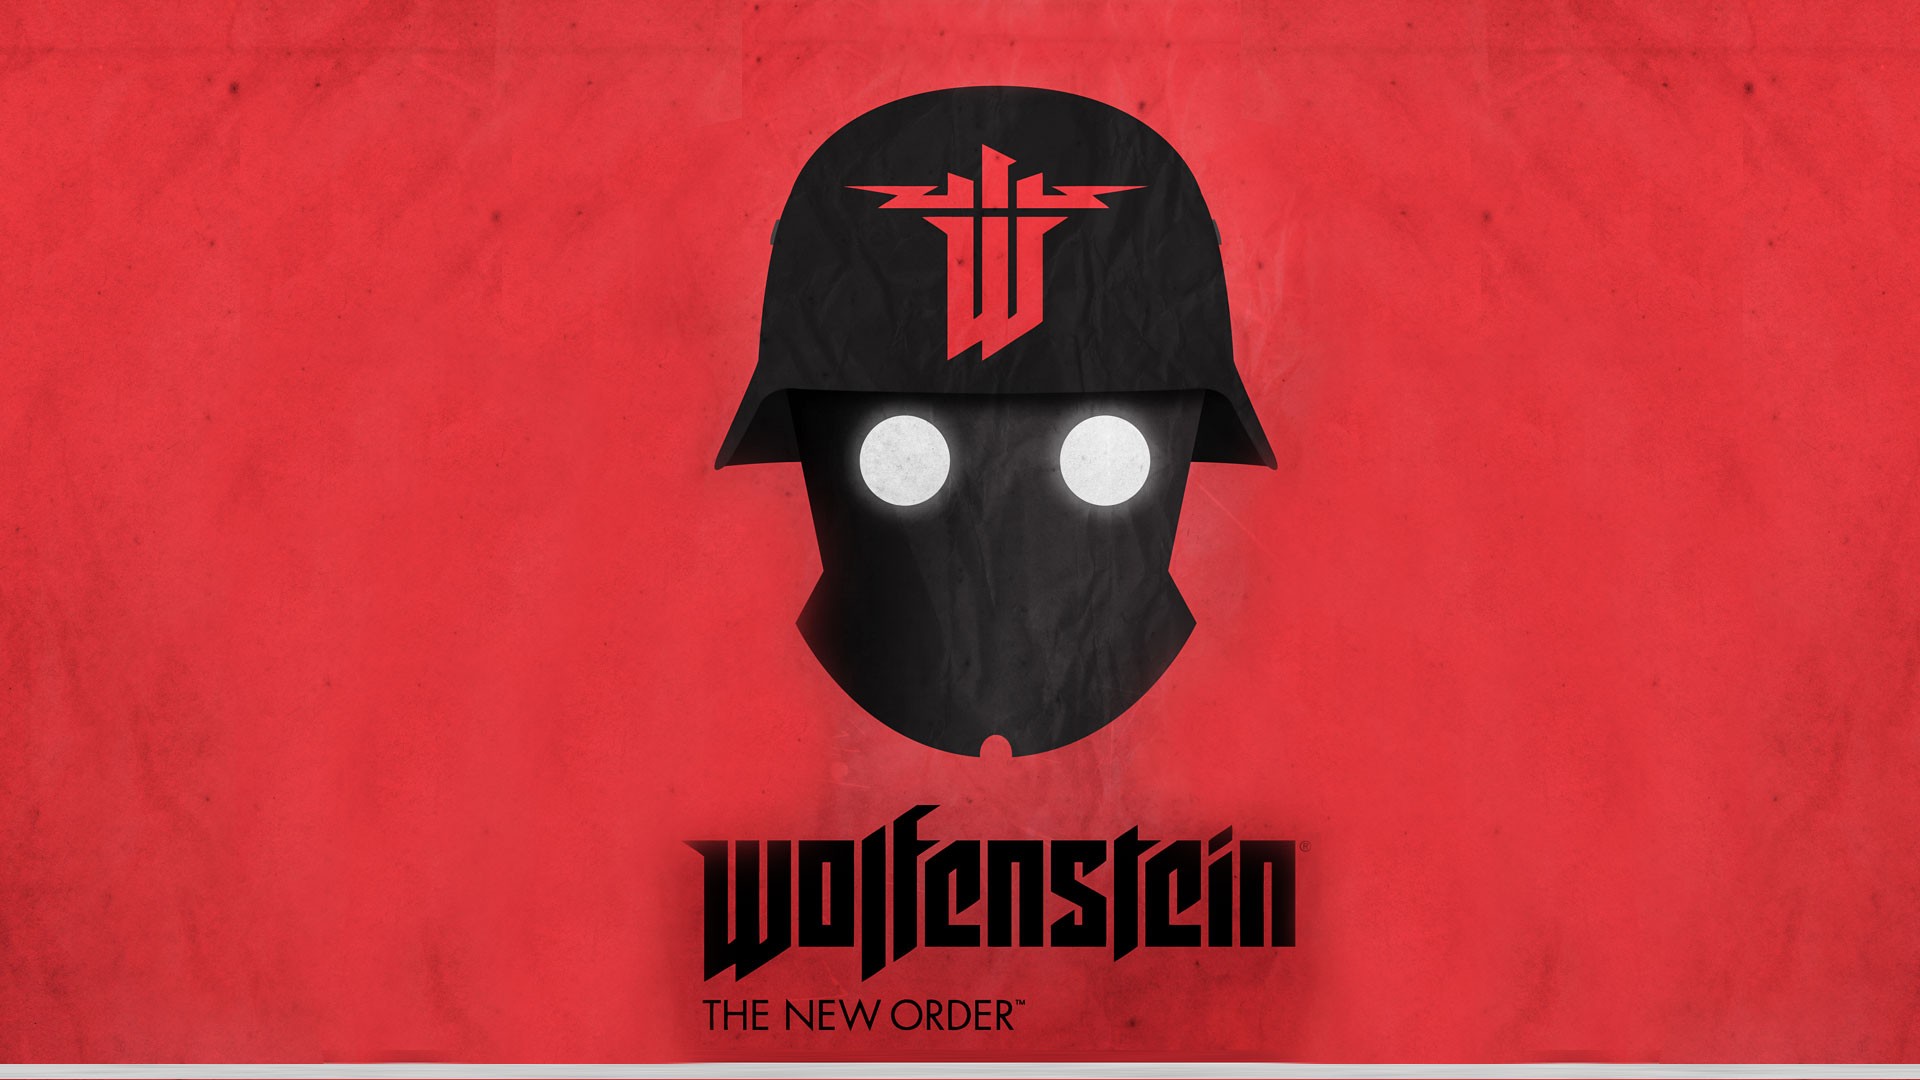 General 1920x1080 Wolfenstein: The New Order Nazi video games red background Bethesda Softworks